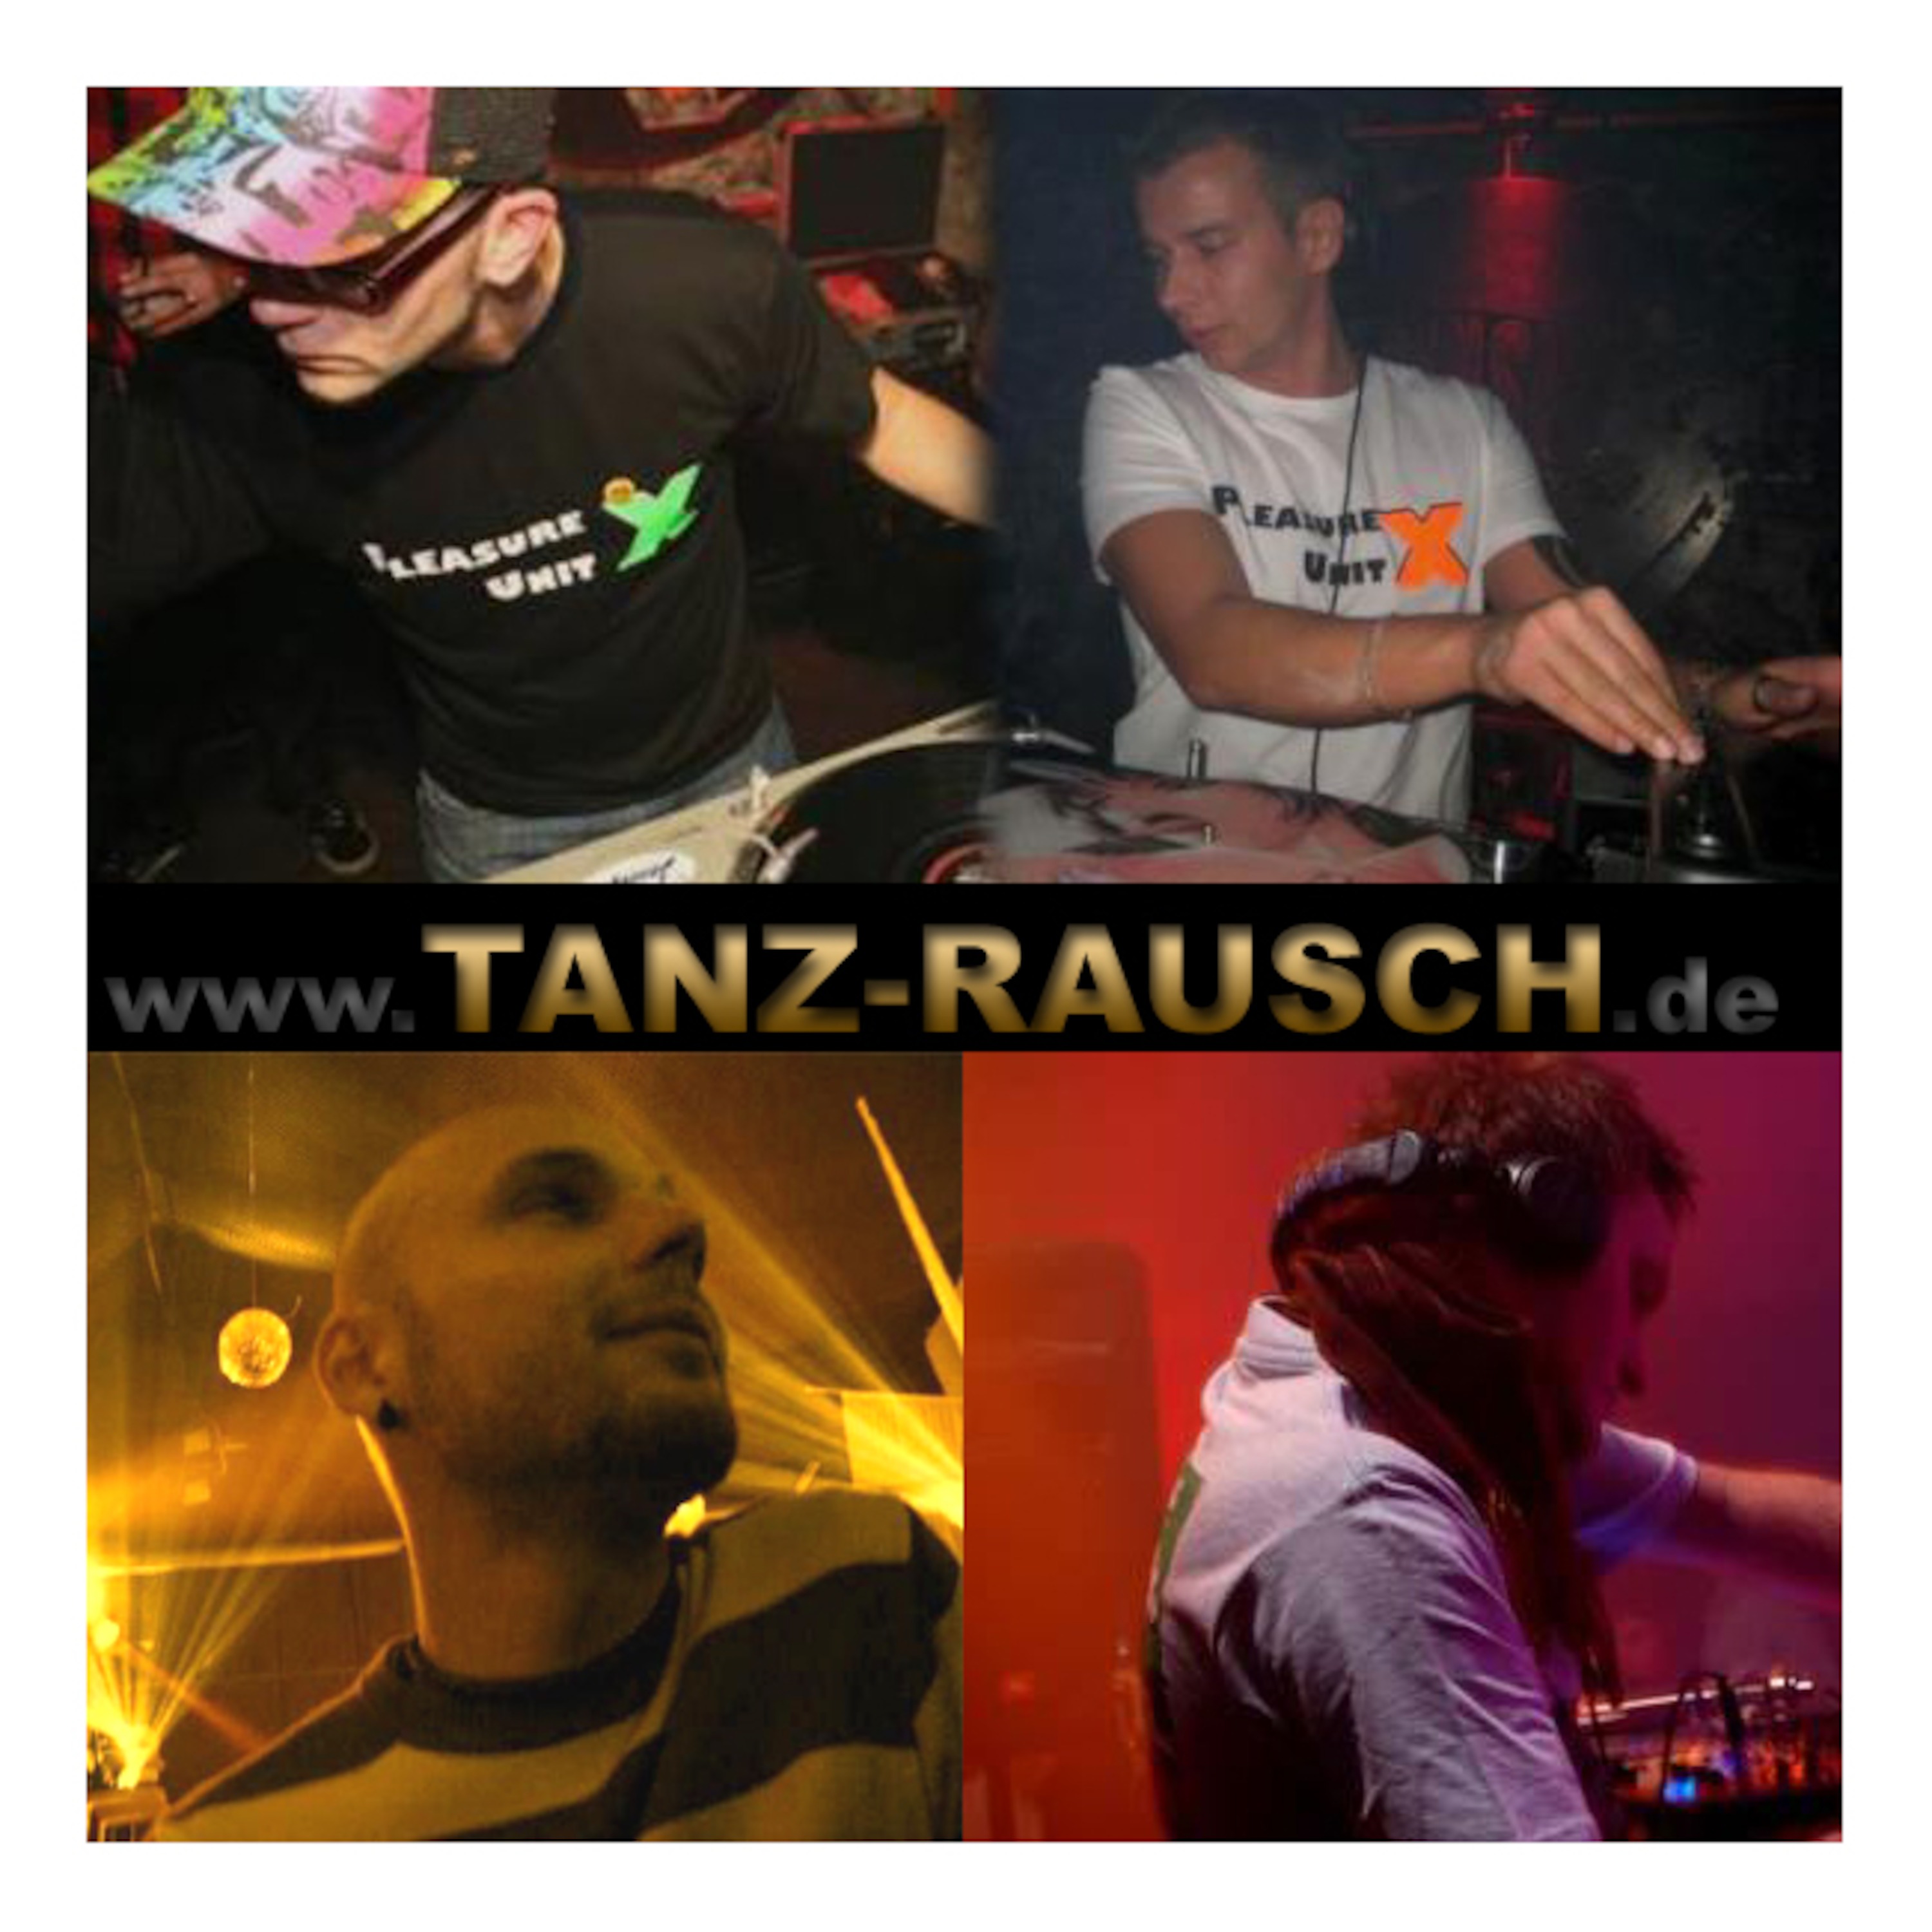 TANZ-RAUSCH Podcast